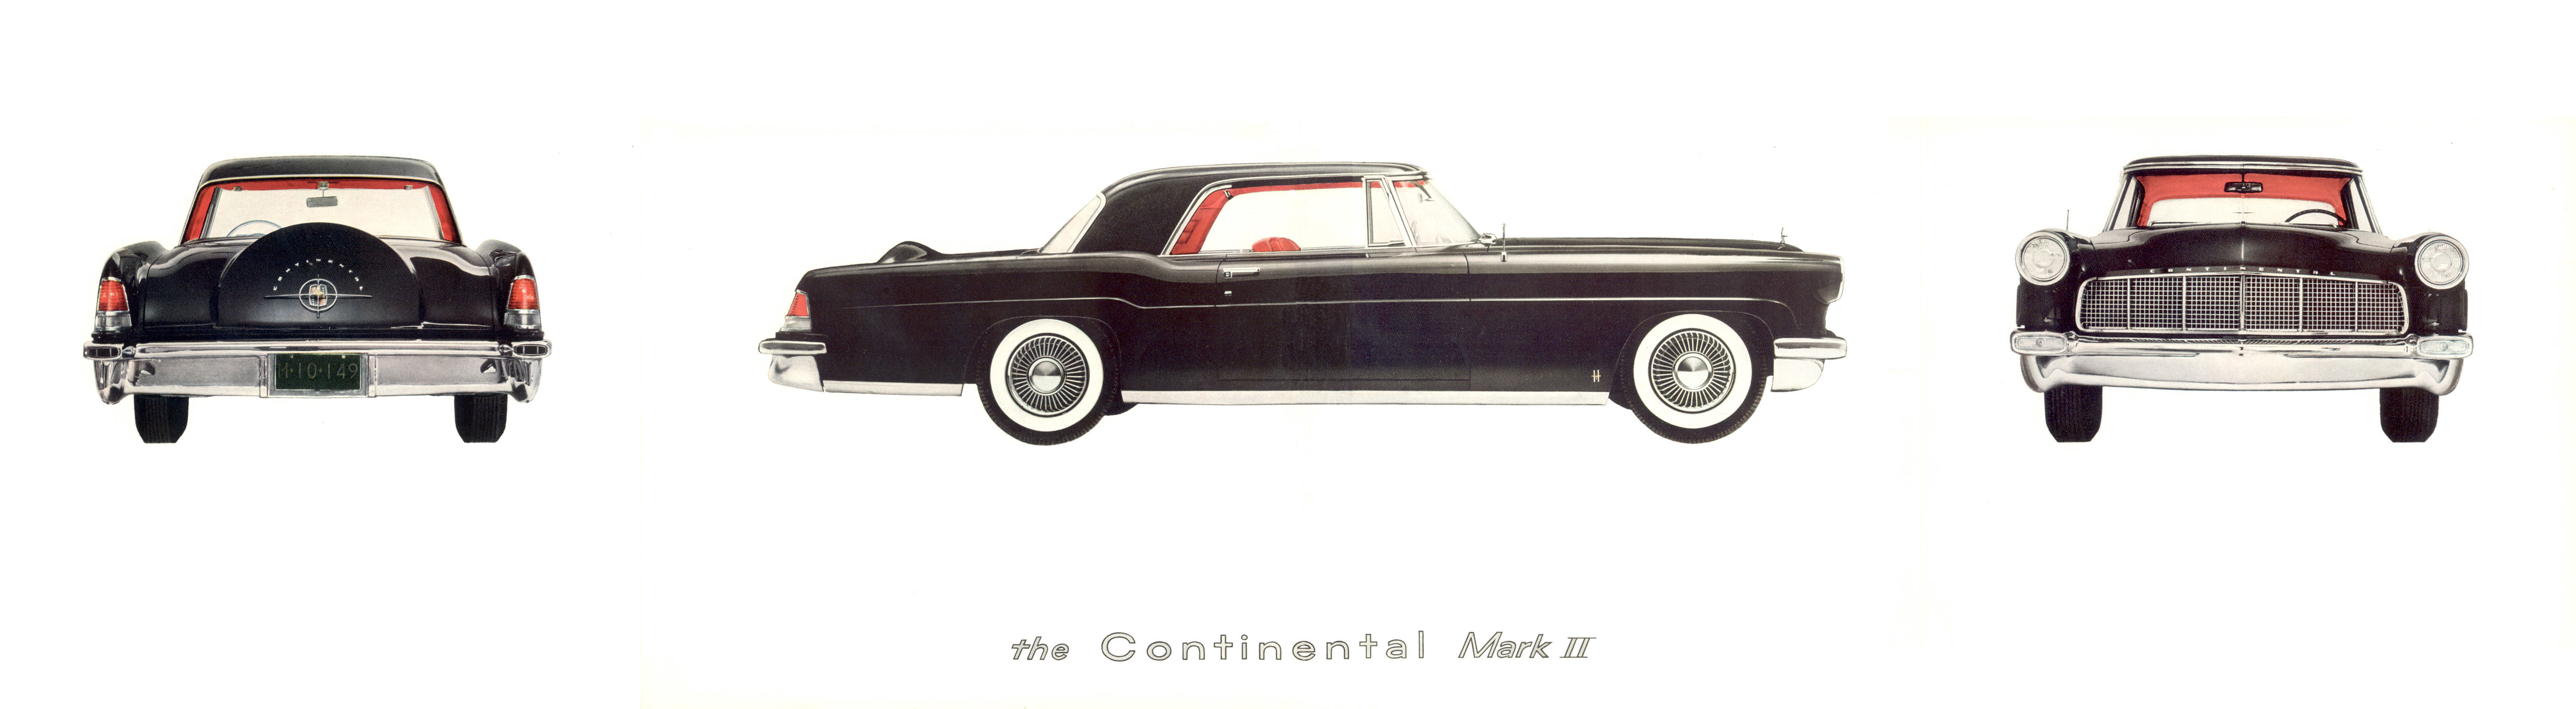 1956_Continental_Mark_II-03